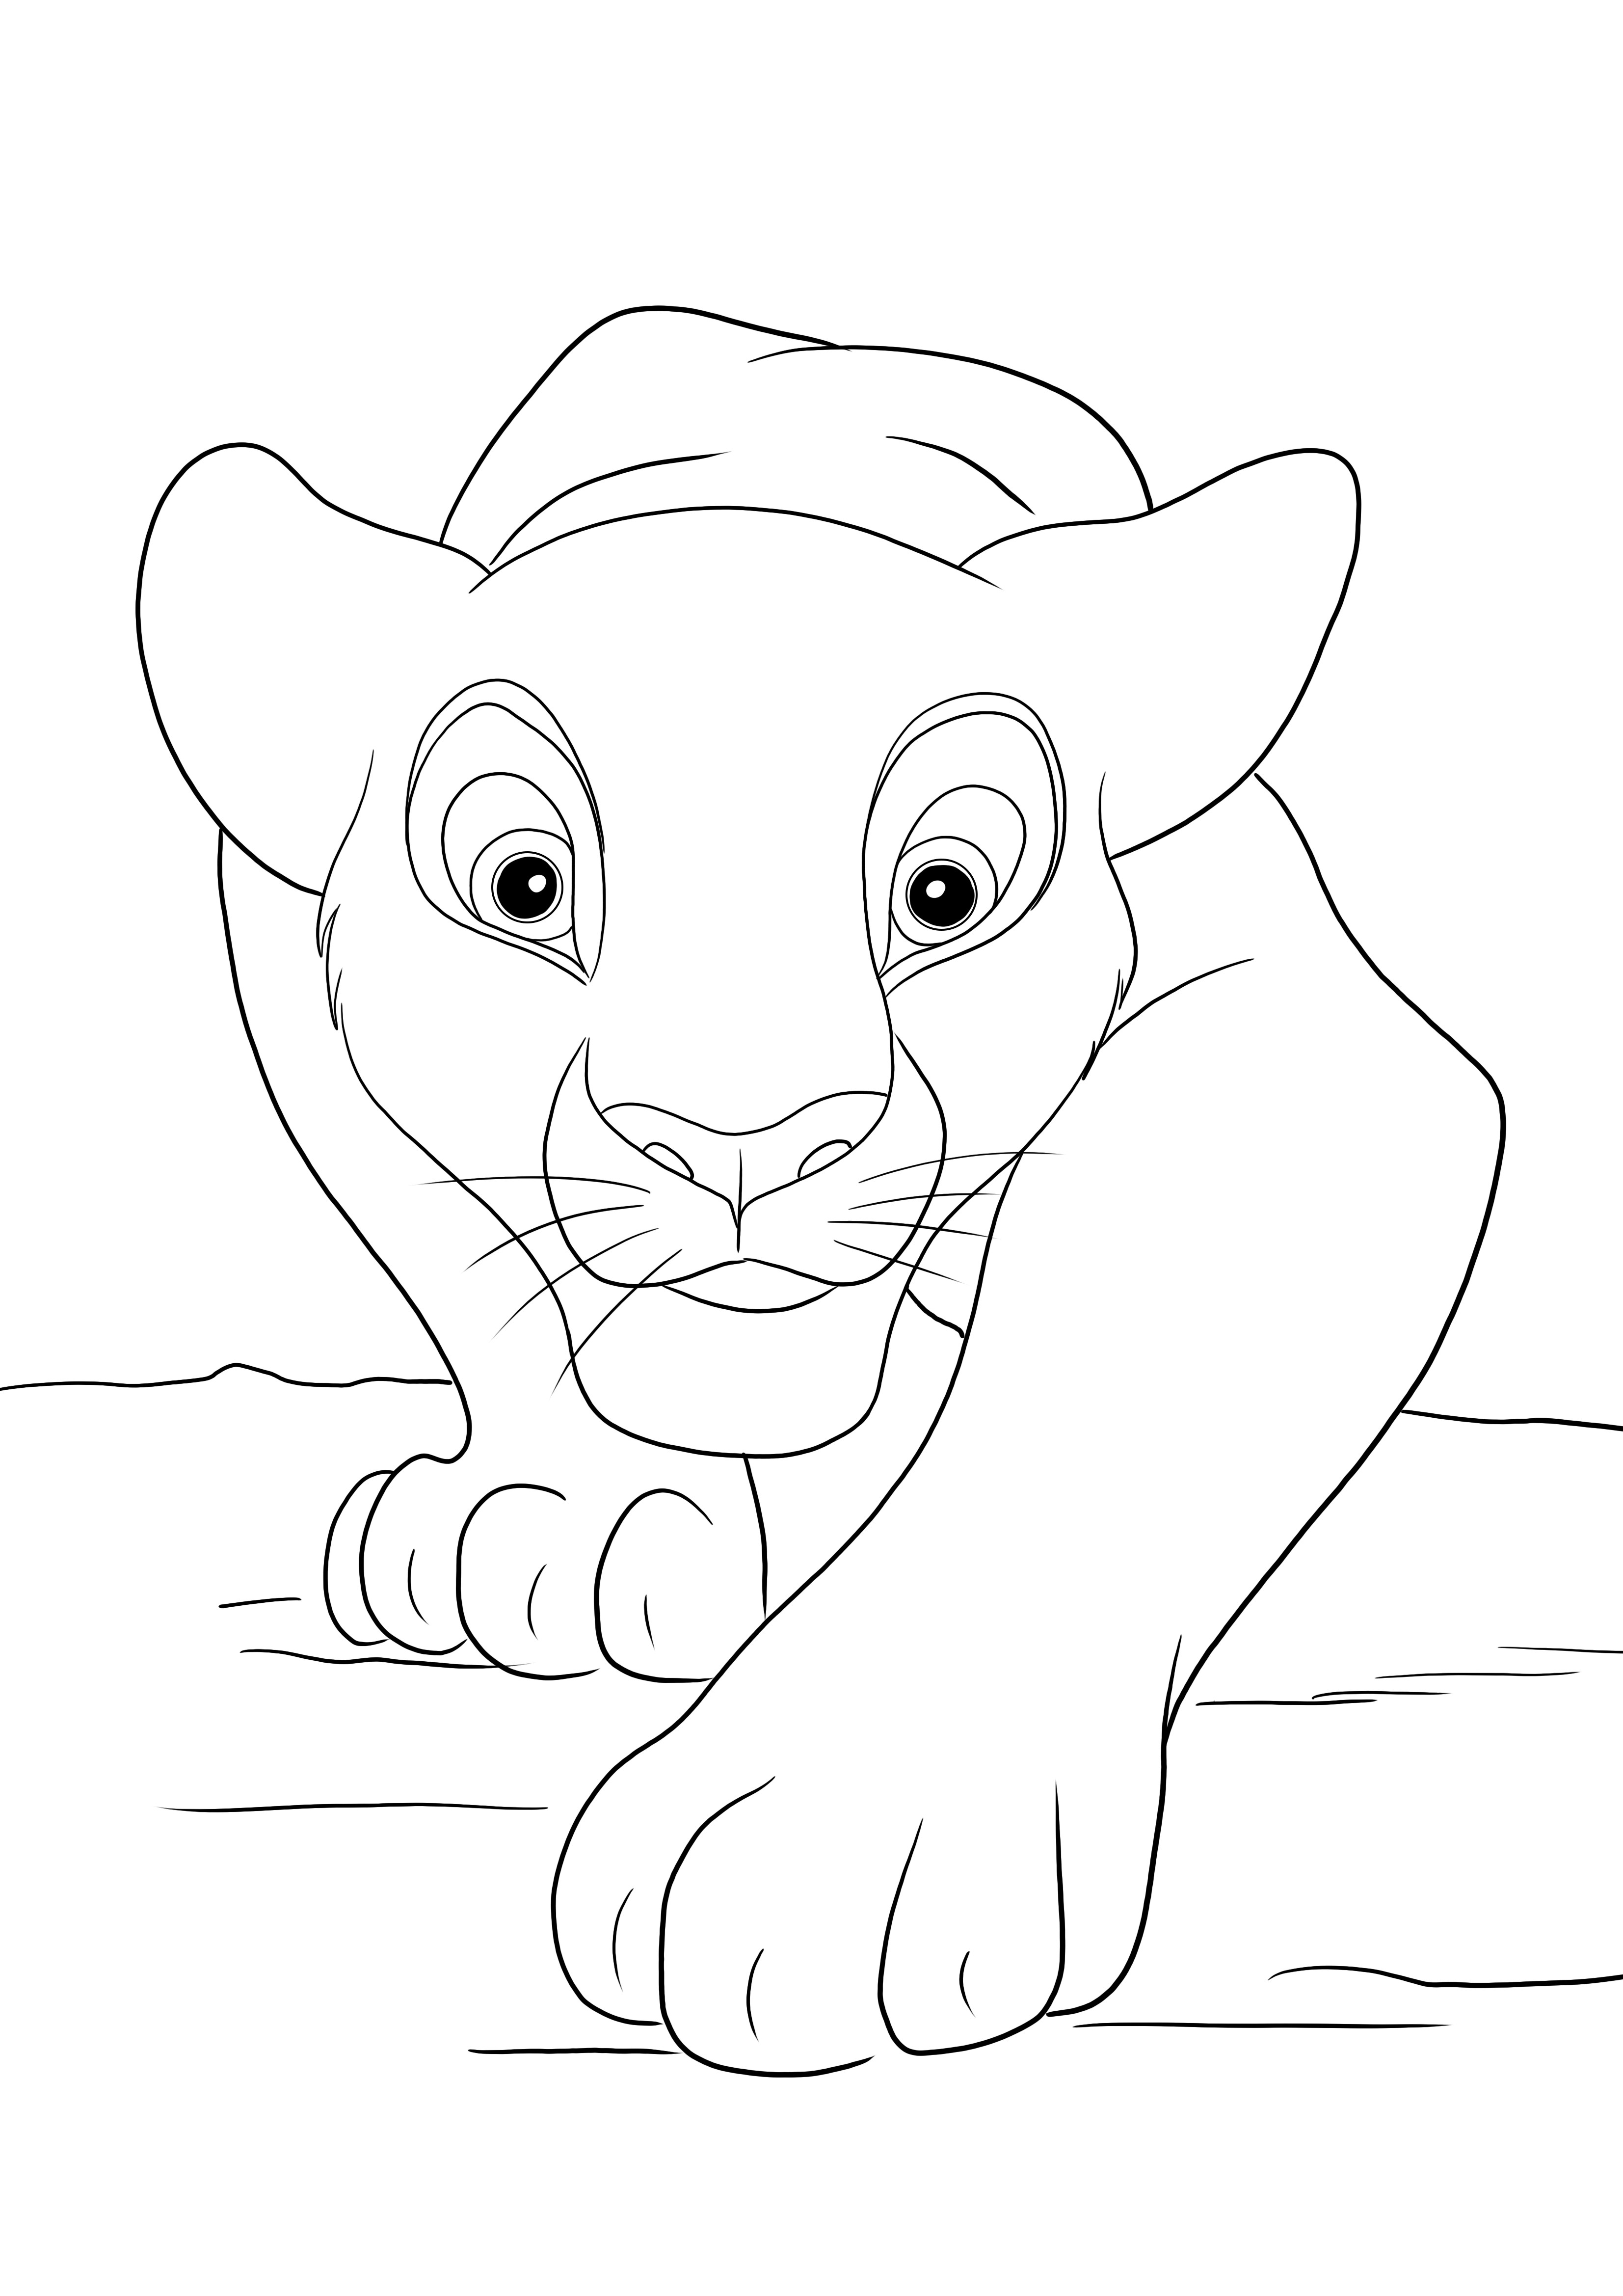 Pagina da colorare di Simba a caccia libera da stampare o salvare per un'immagine successiva